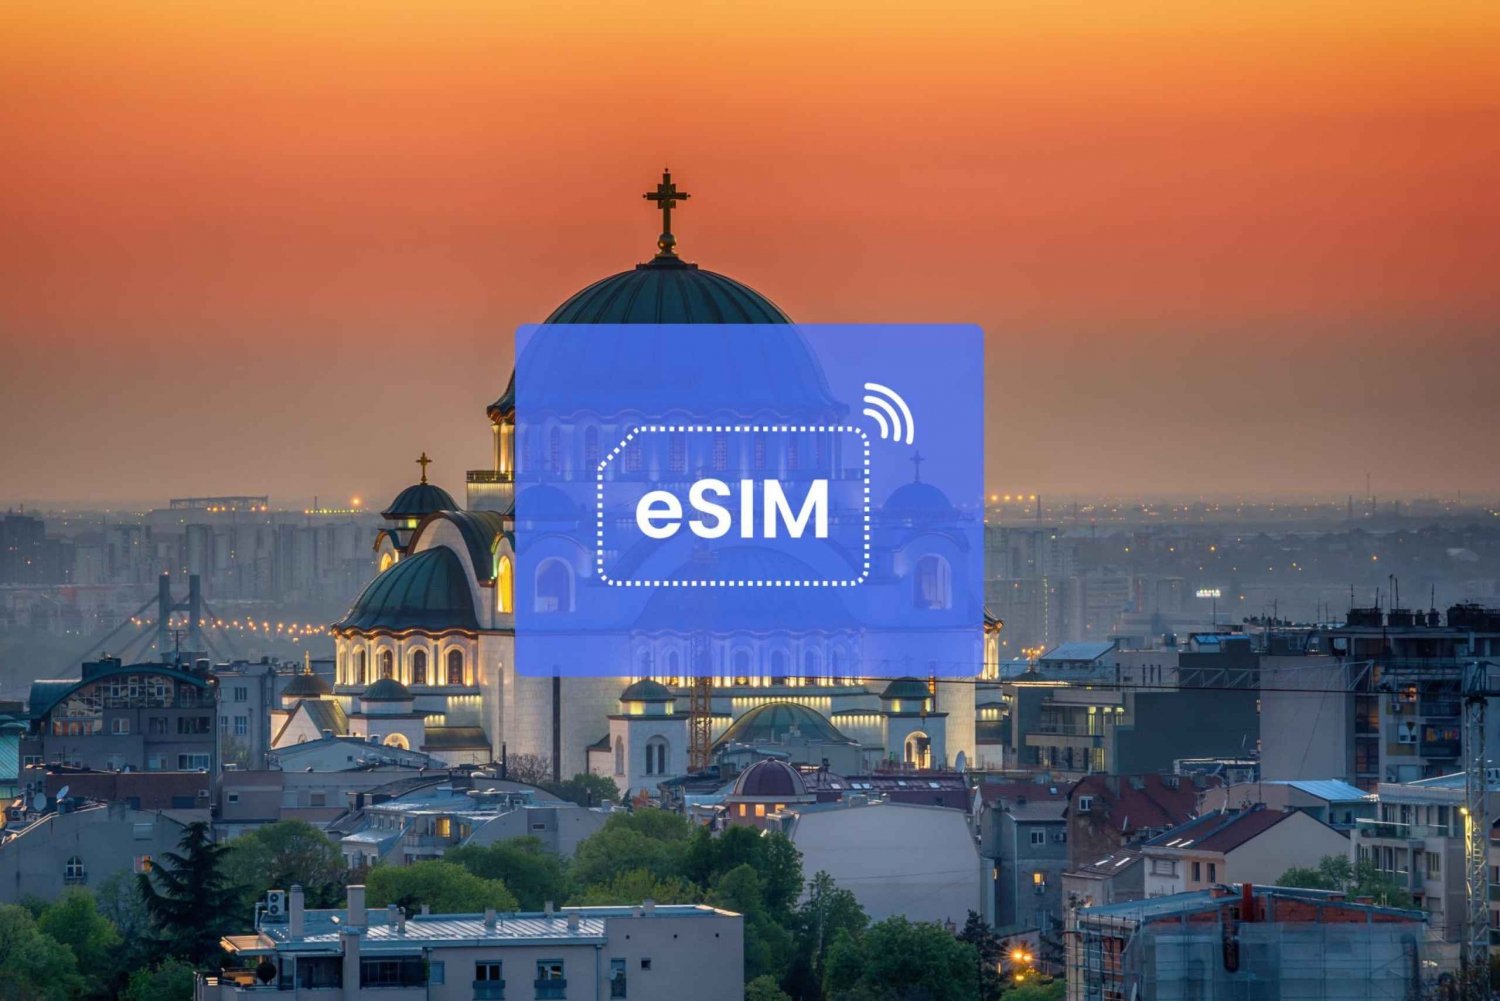 Belgrad: Serbien & EU eSIM Roaming Mobil Dataplan